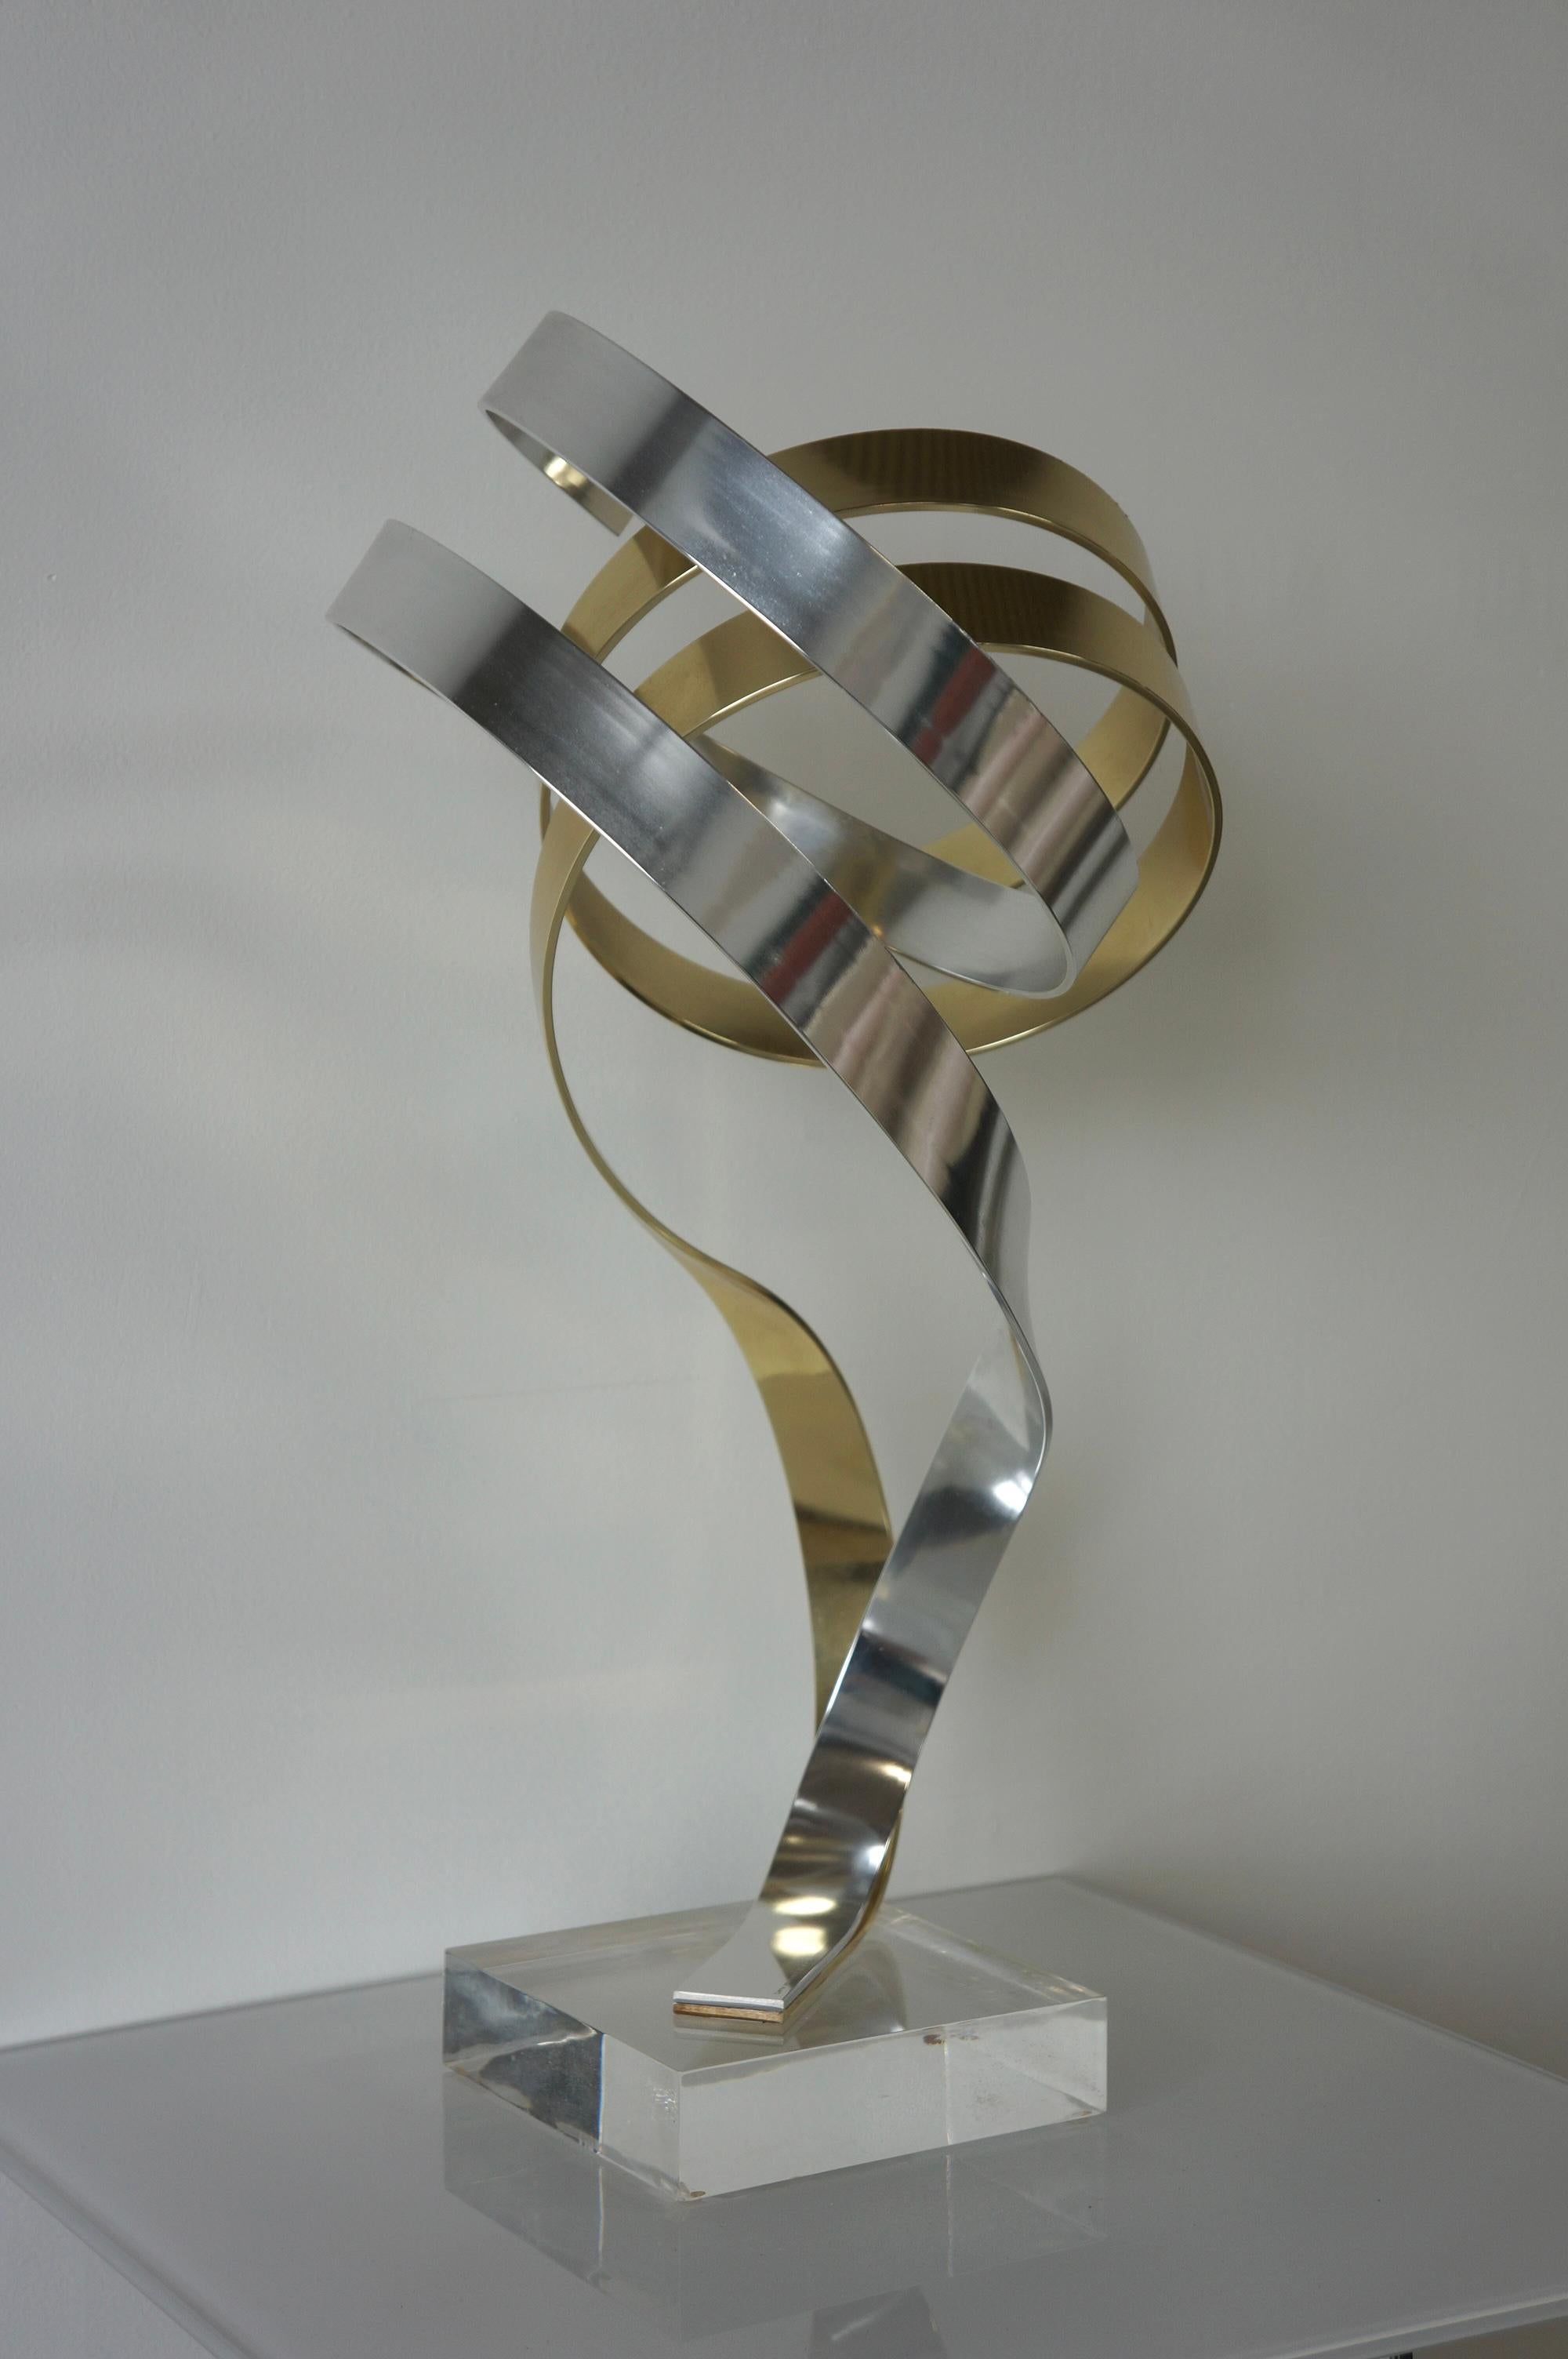 Abstrakte 'Ribbon'-Skulptur aus eloxiertem Aluminium mit Goldton von Dan Murphy. Diese kinetische Skulptur erinnert an eine Bandform, bei der die aus Aluminium geformten Teile ineinander verschlungen sind und von einem Sockel aus Lucit getragen